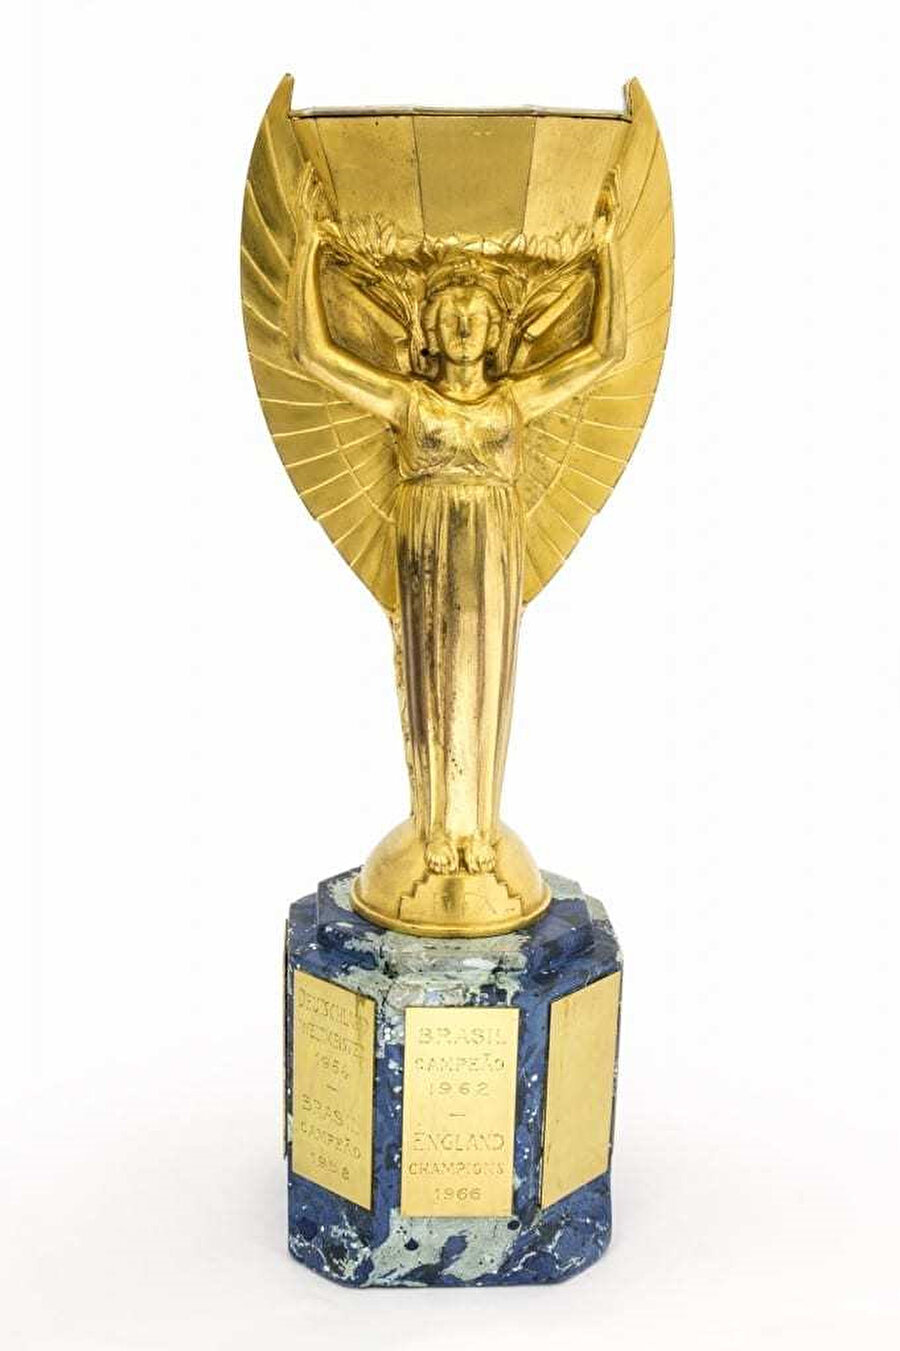 İngiltere’deki Ulusal Futbol Müzesi’nde sergilenen Jules Rimet Trophy.